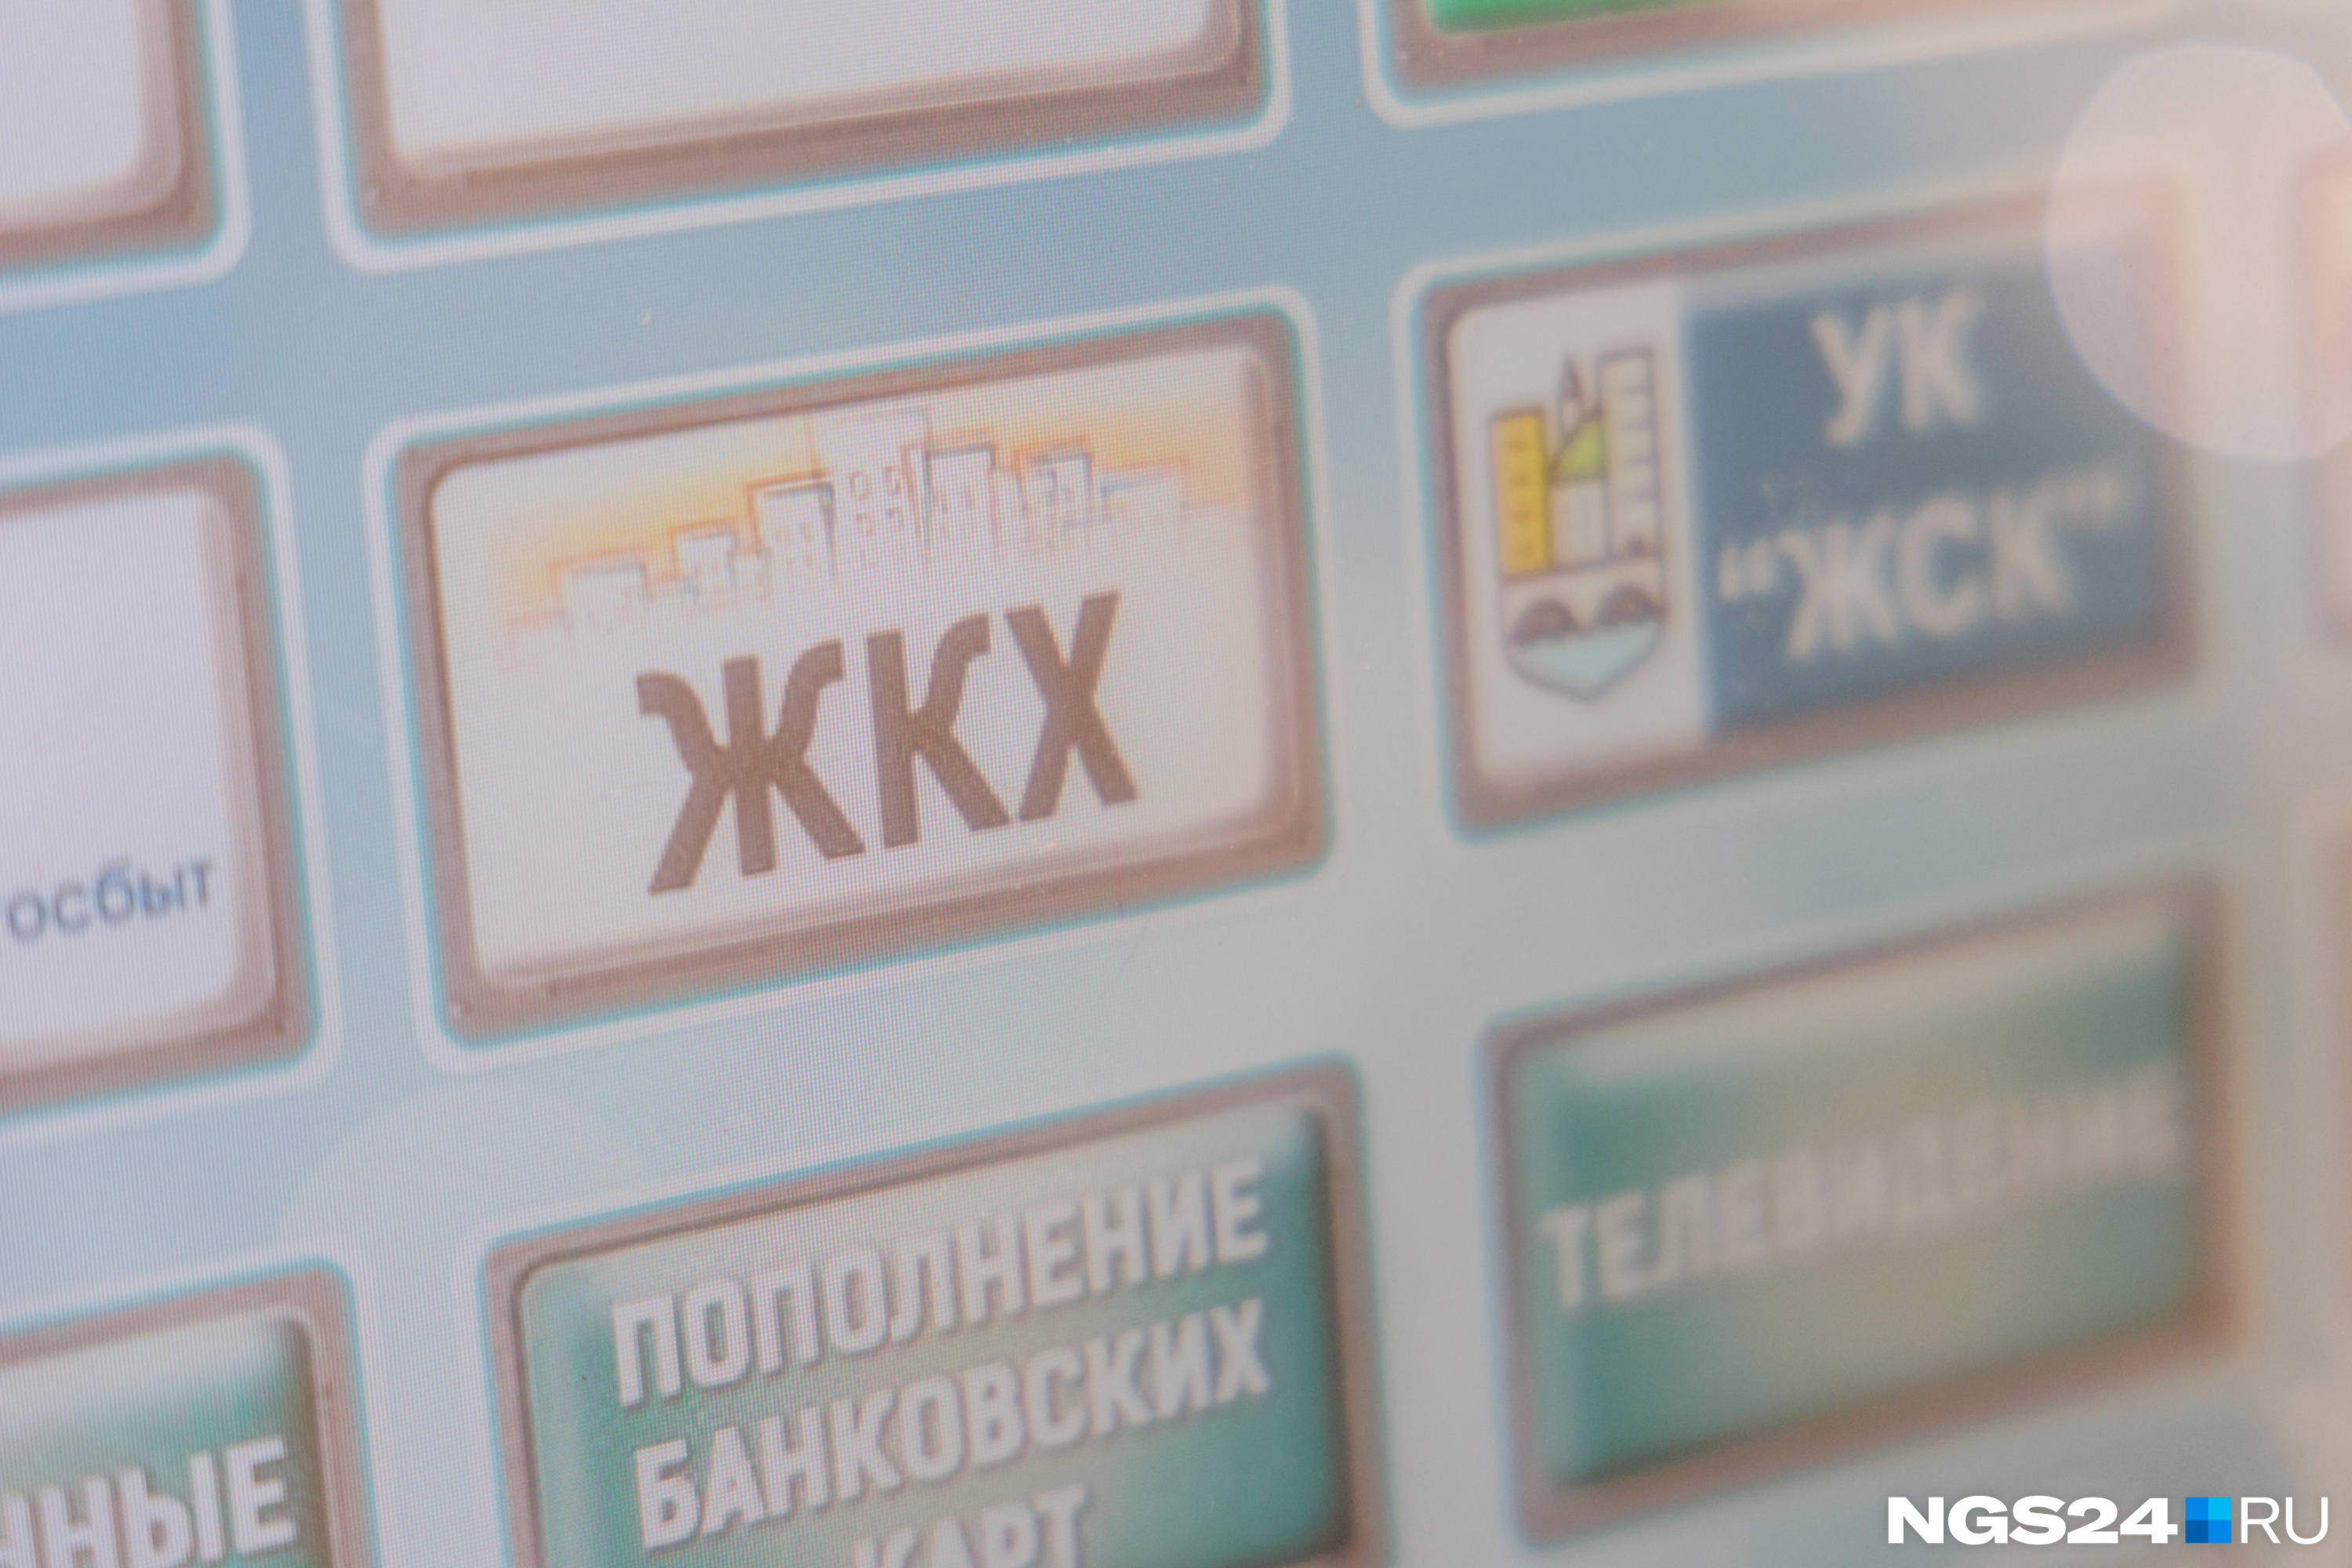 В Красноярске с 1 июля подорожают услуги ЖКХ. На сколько в этот раз?